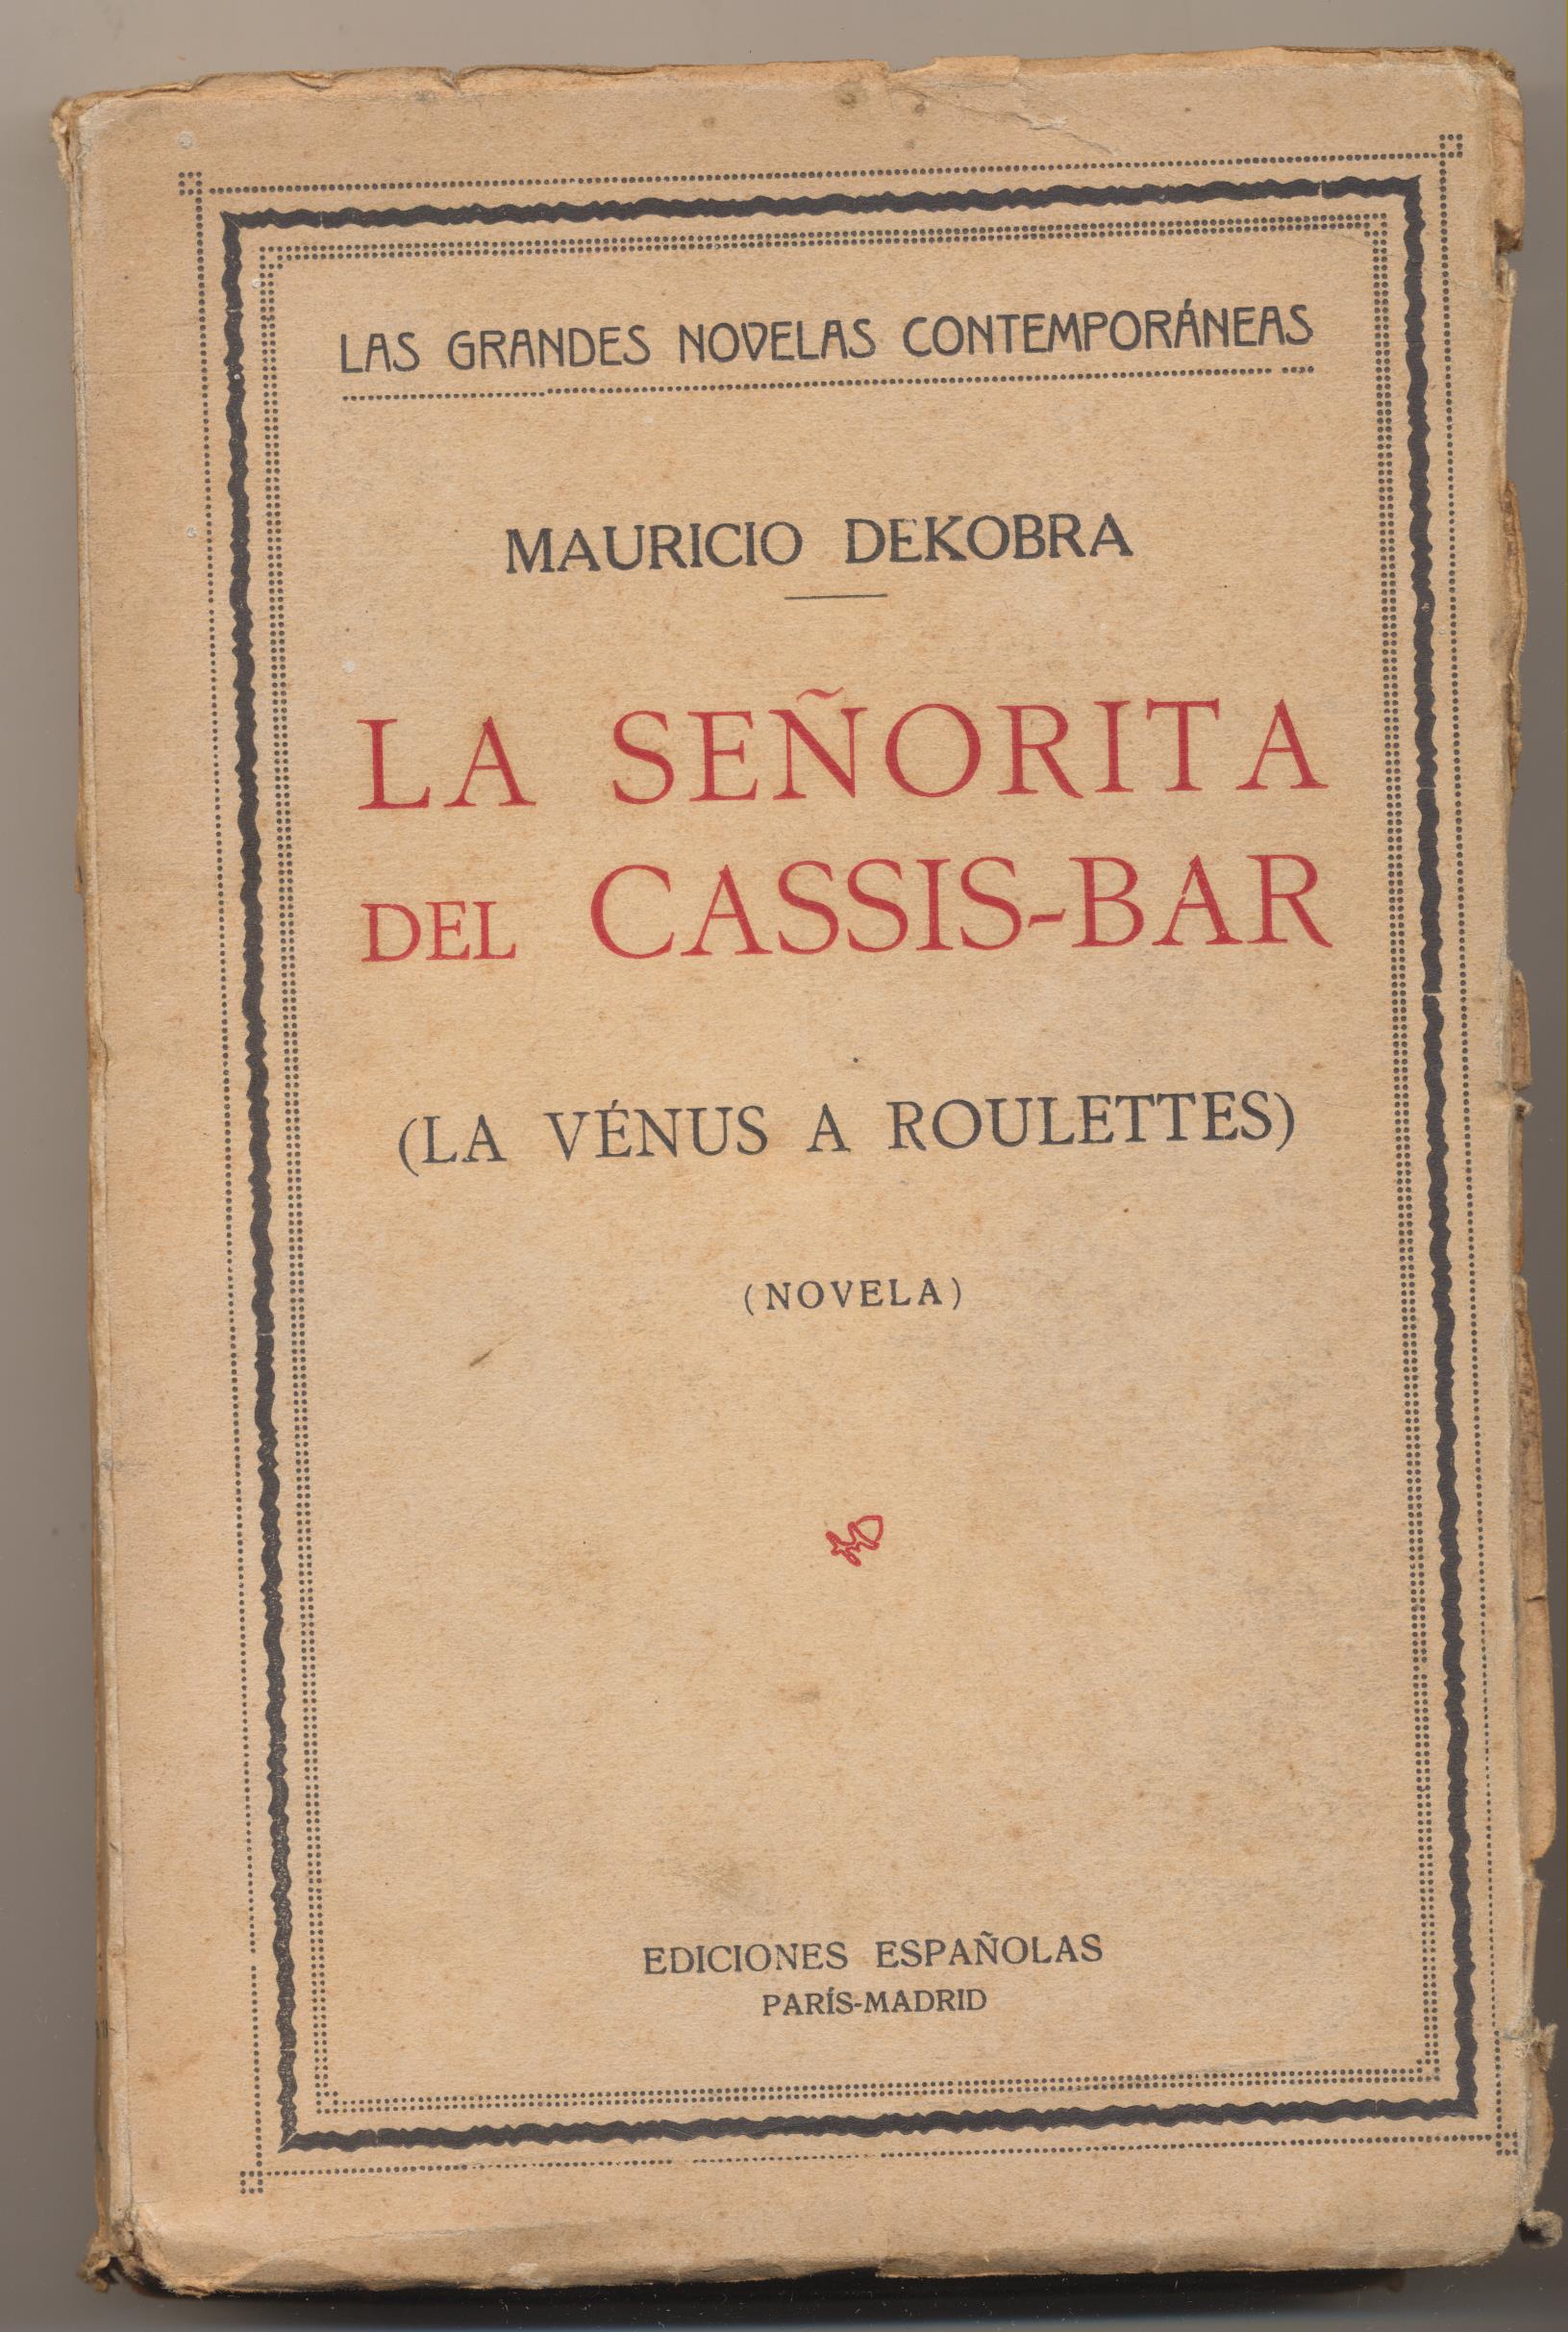 Mauricio Dekobra. La Señorita del Cassis-Bar. Ediciones España 1926